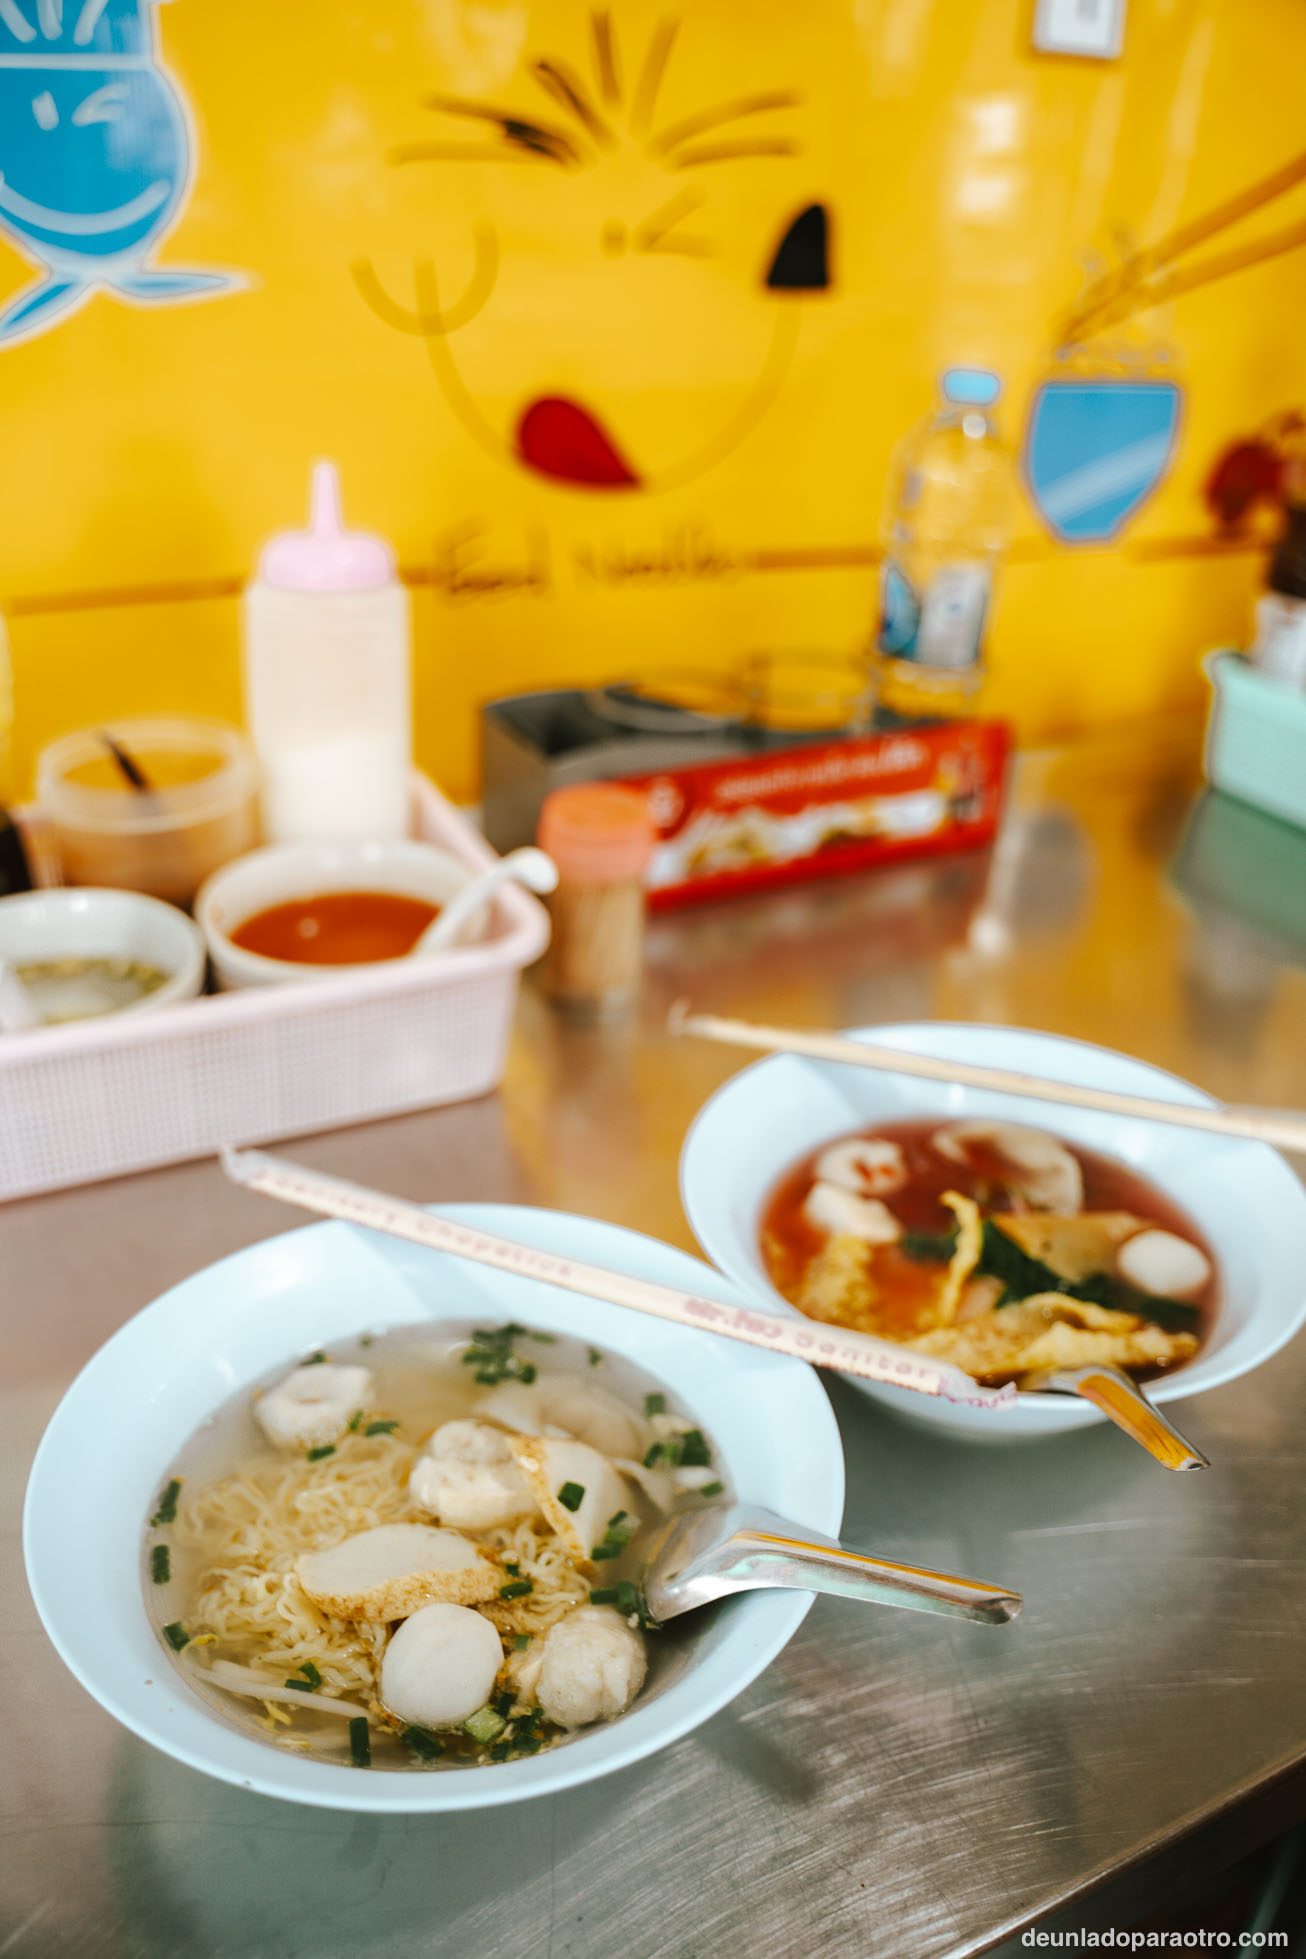 Comer, algo que tienes que hacer en Bangkok